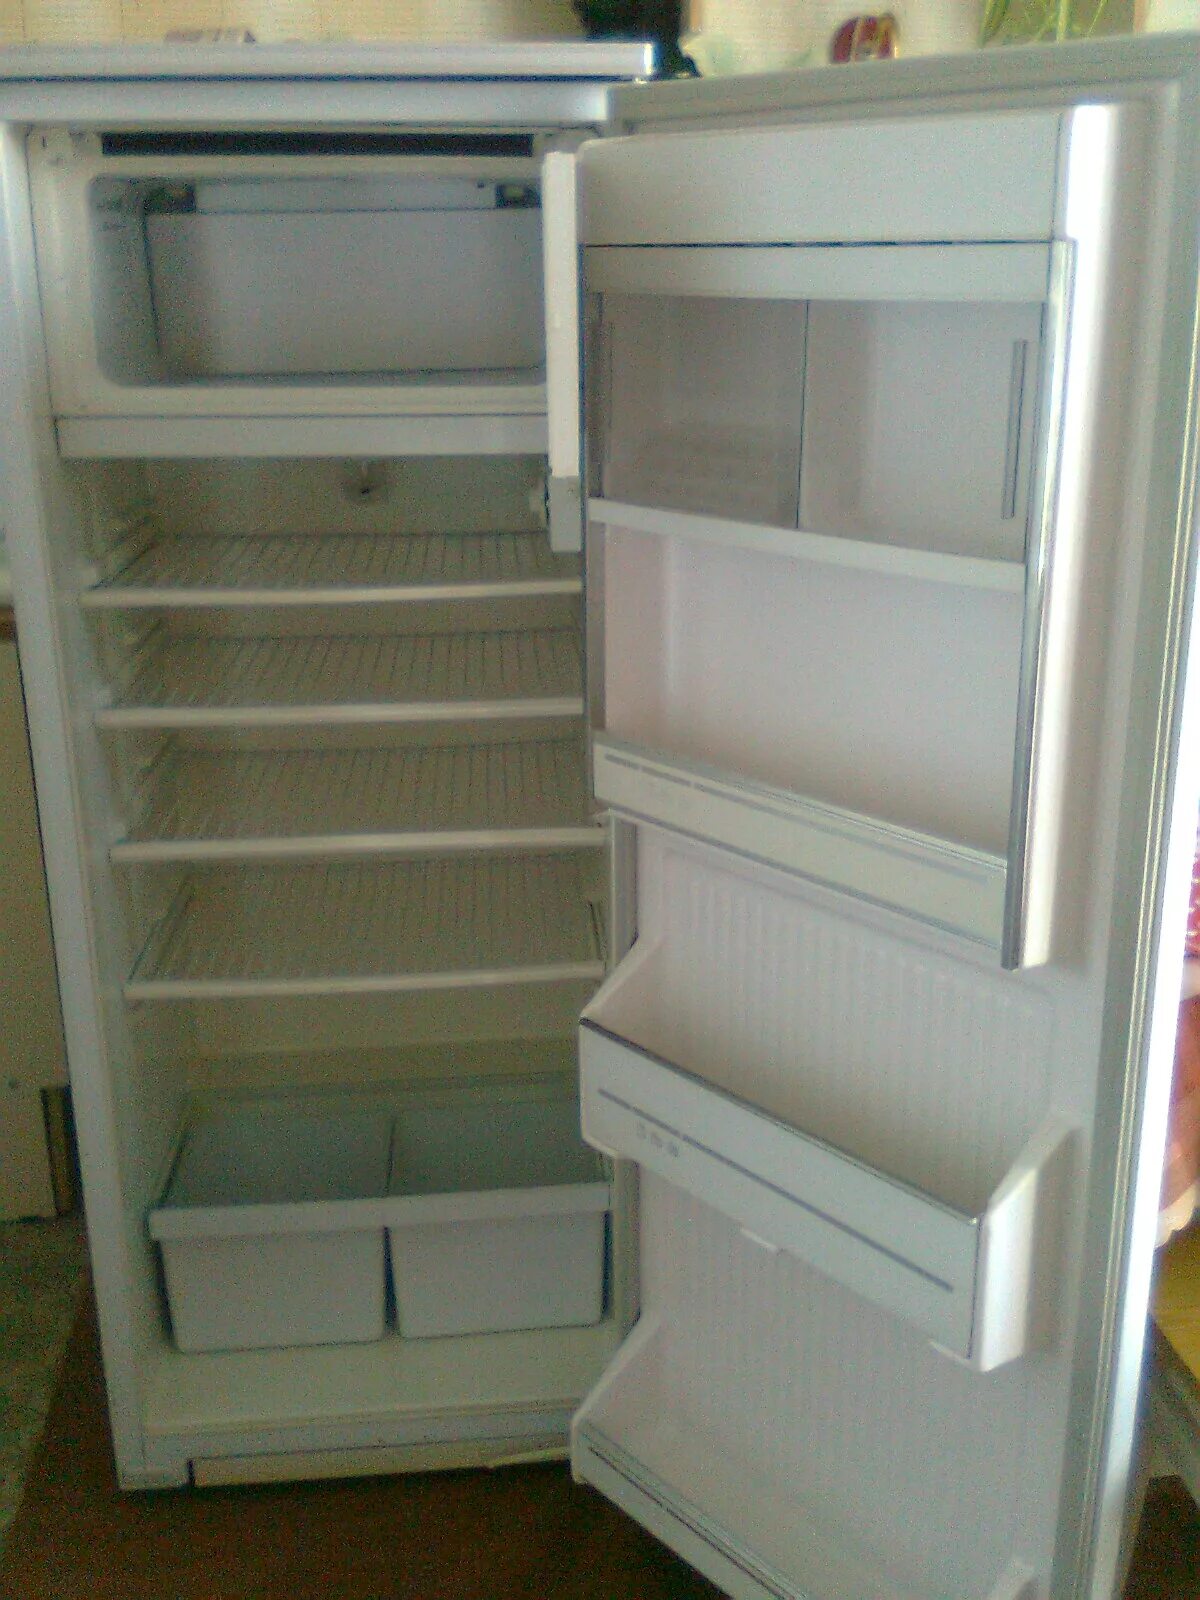 Холодильник Атлант двухкамерный 1994 года. Холодильник Атлант 1995. Холодильник Атлант двухкамерный 1995 года. Атлант 16 холодильник. Холодильники б у минск